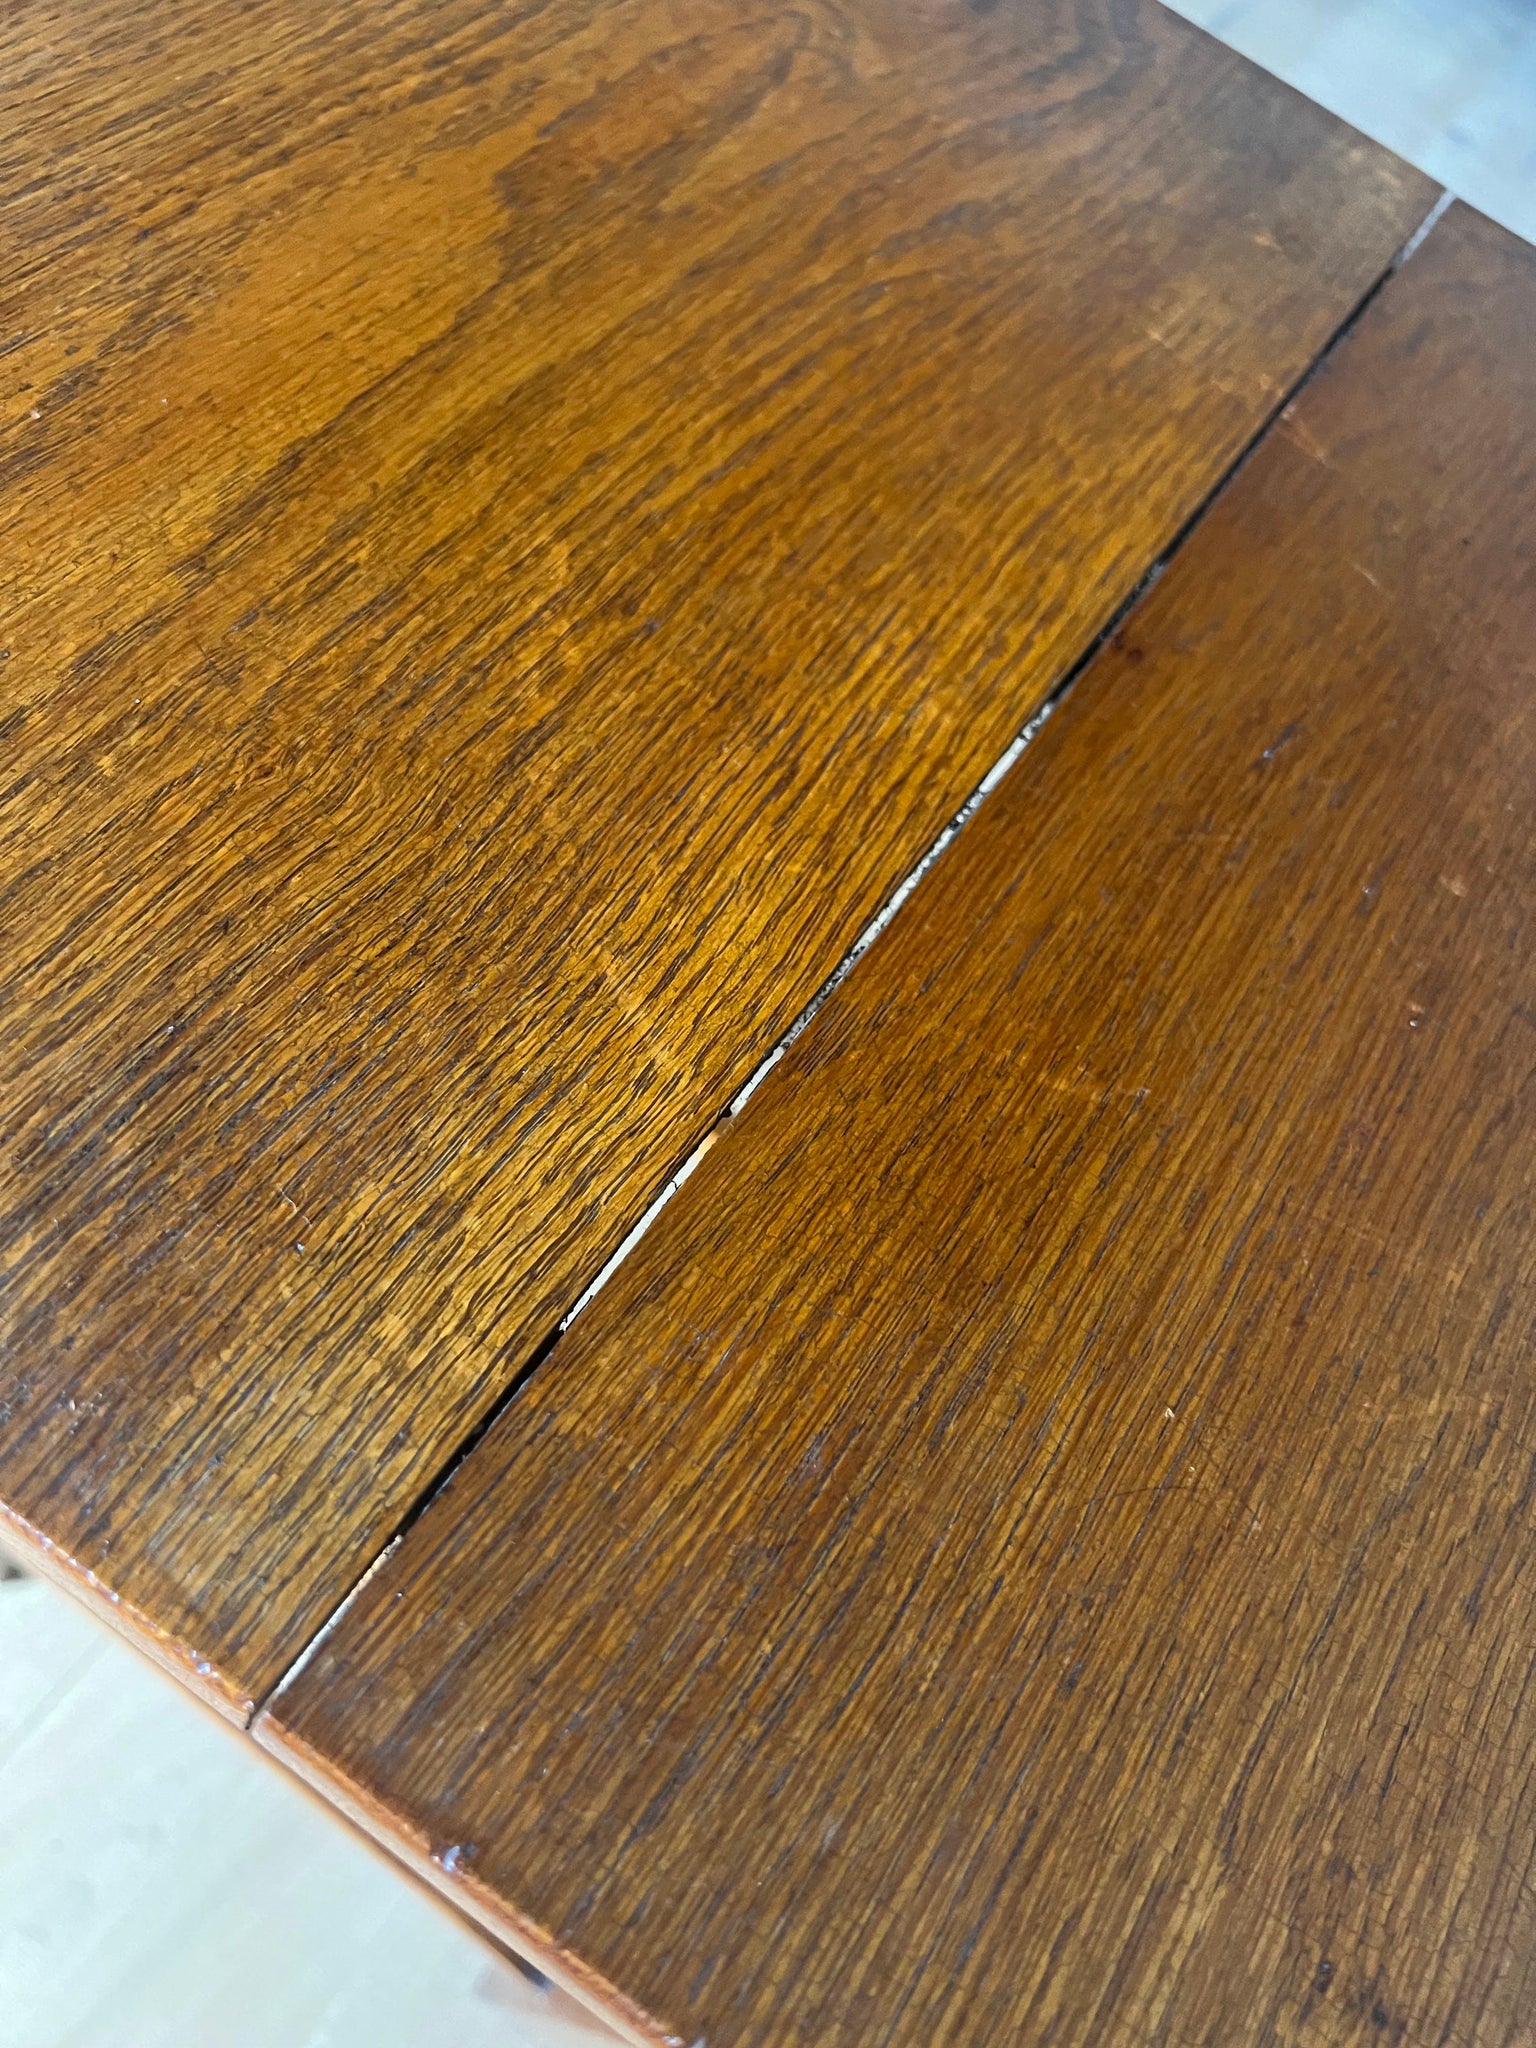 オーク スモール テーブル / oak small table #0248